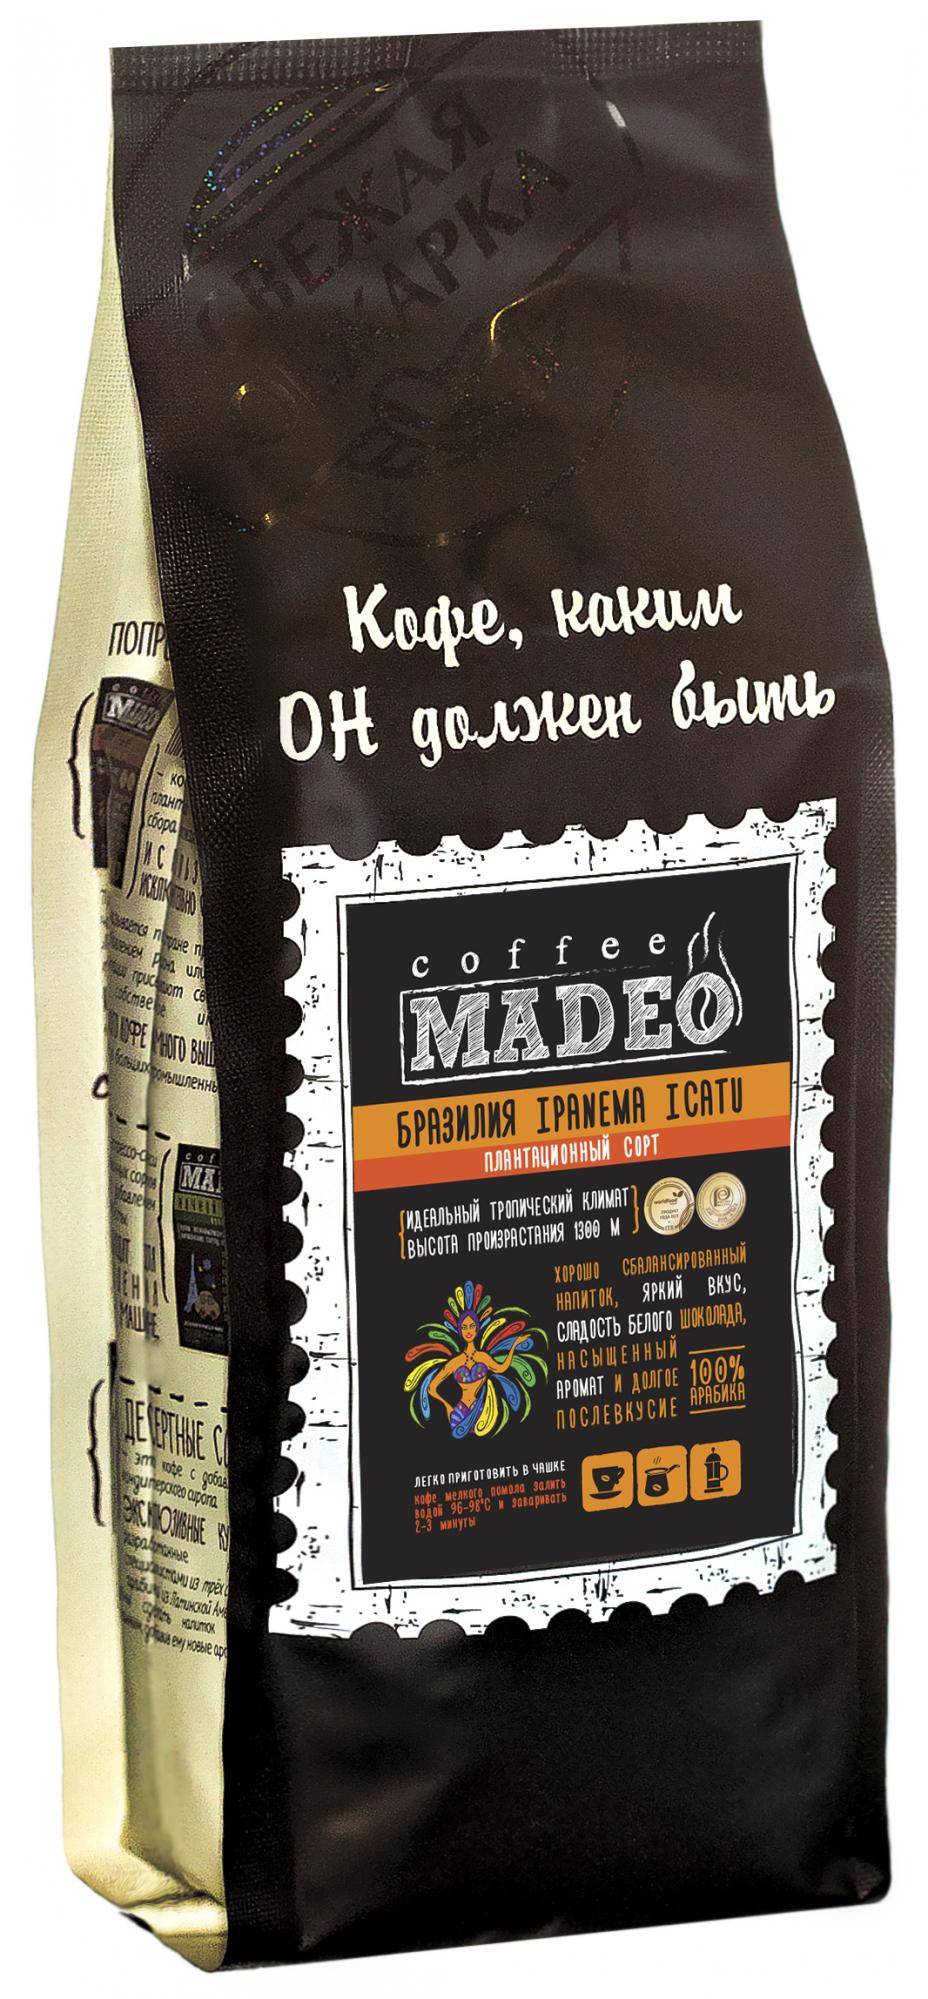 Кофе мадео (madeo)